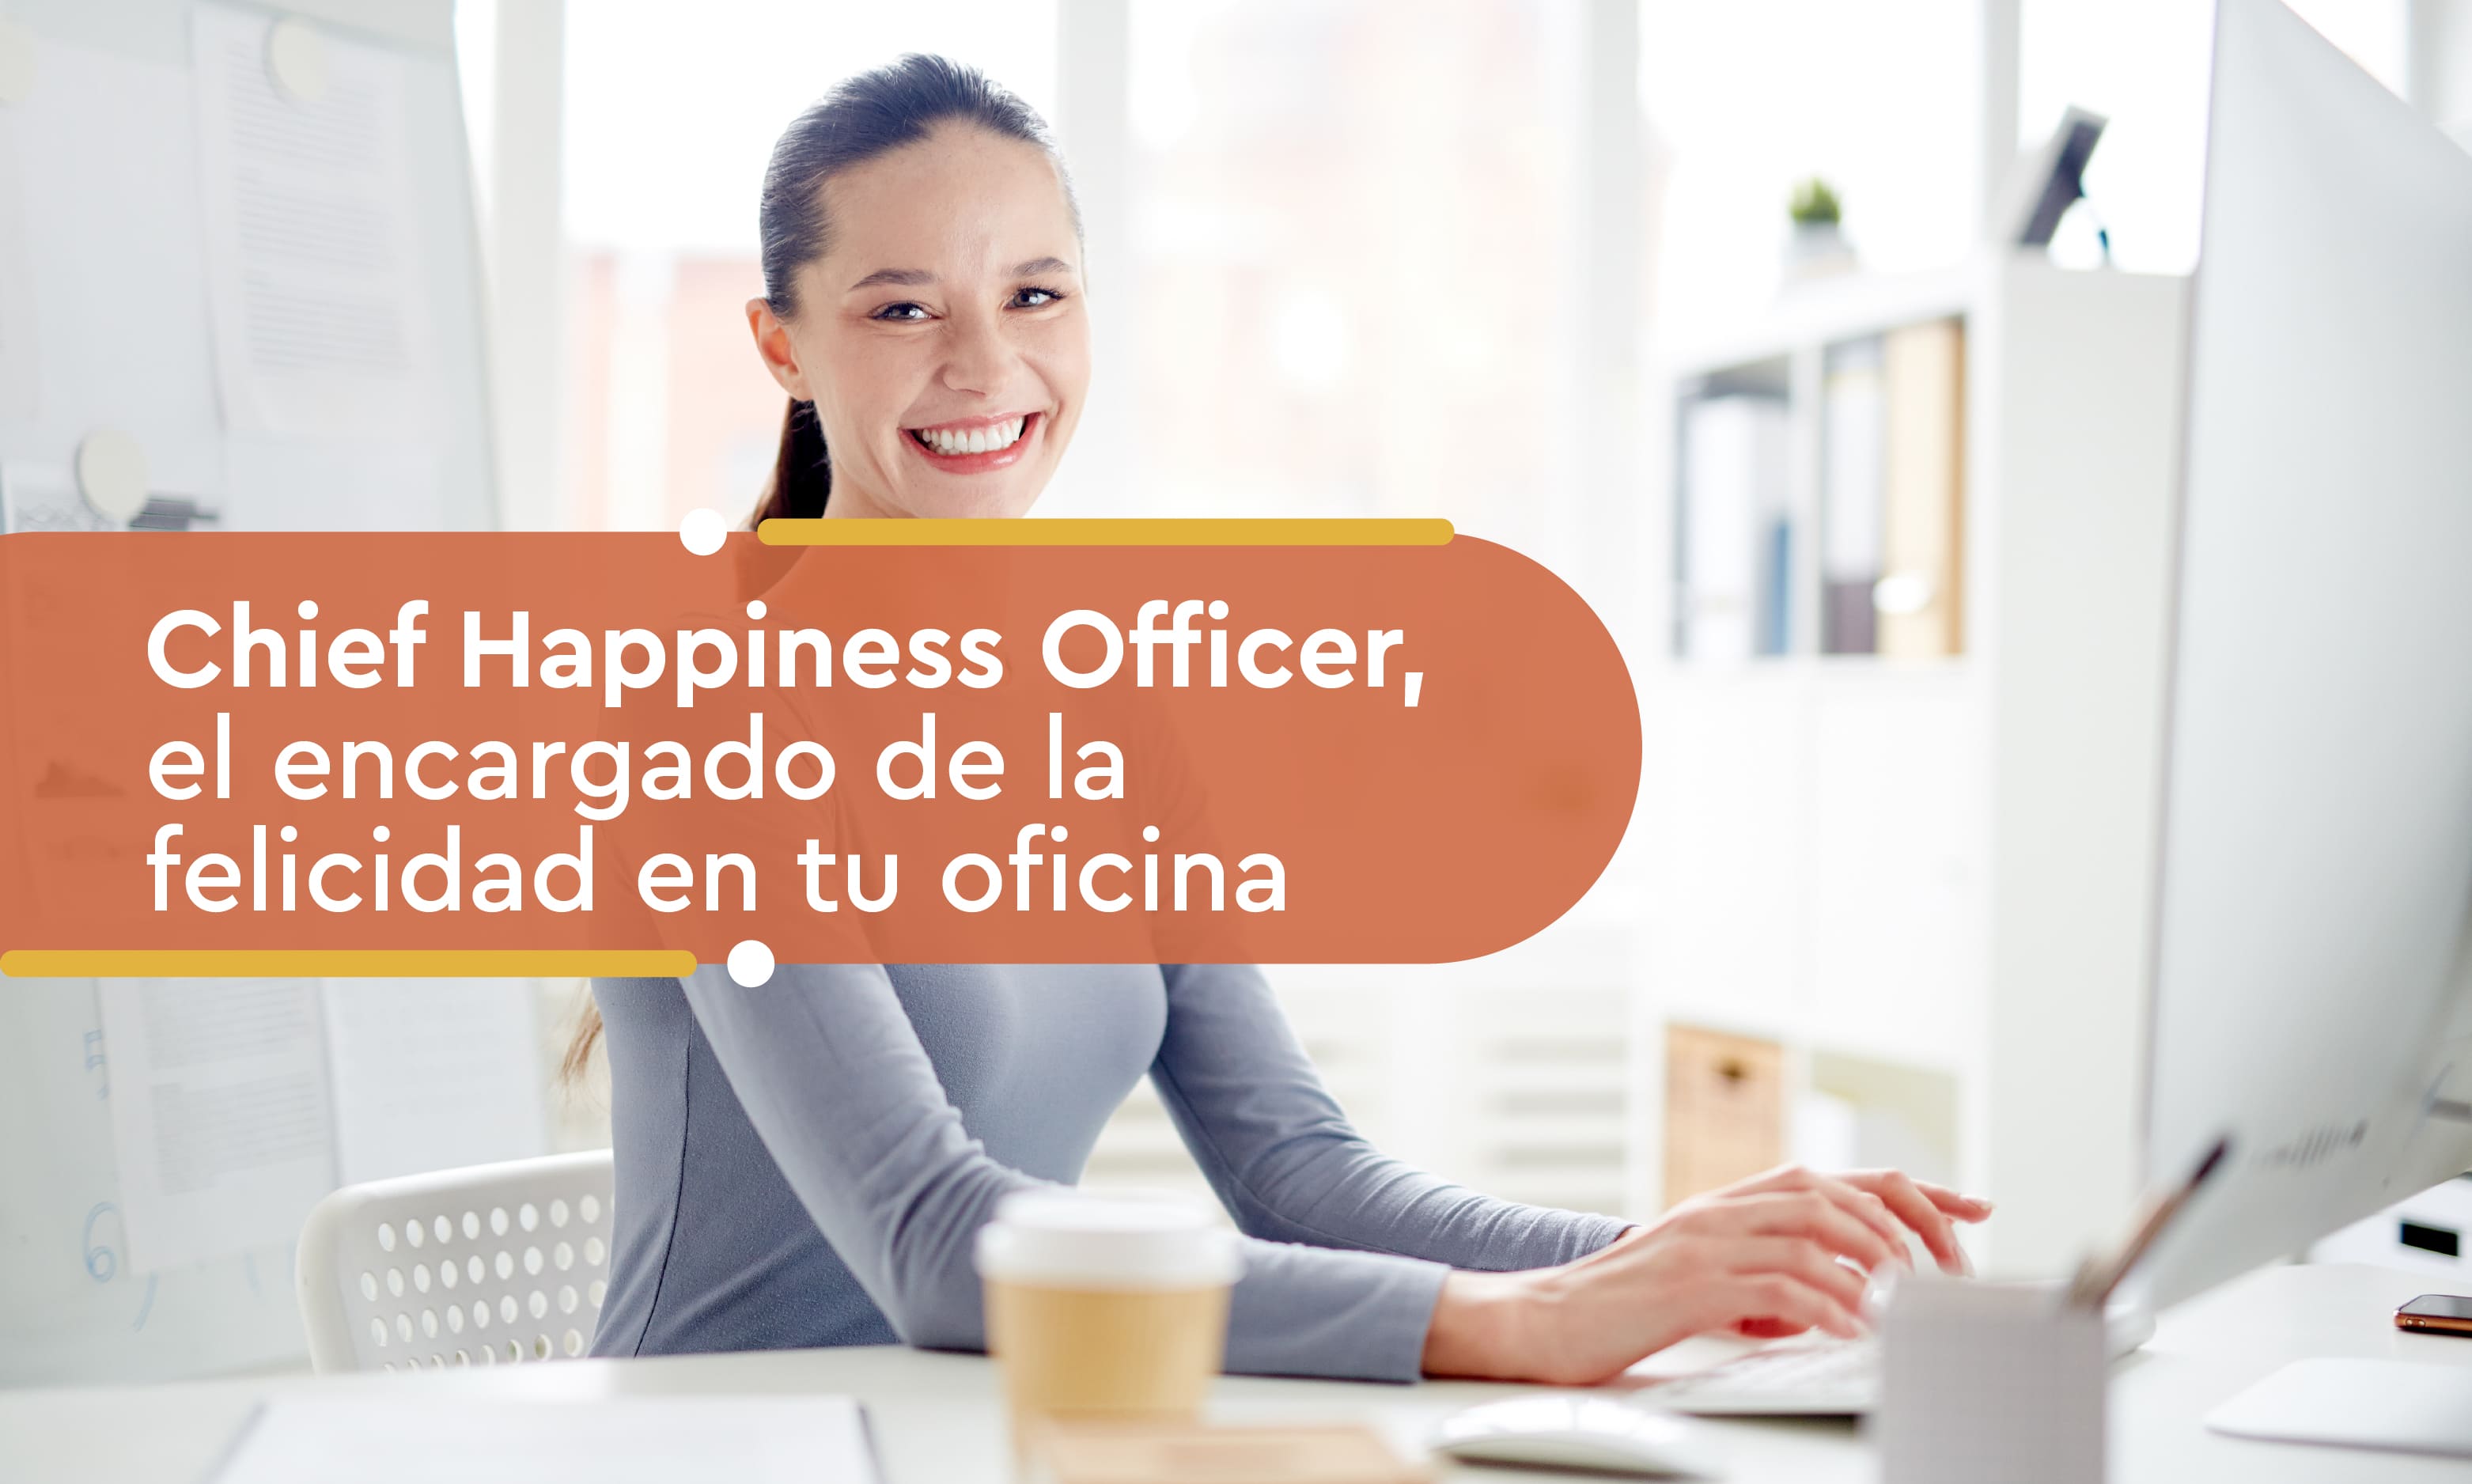 Chief Happiness Officer, el encargado de la felicidad en tu oficina